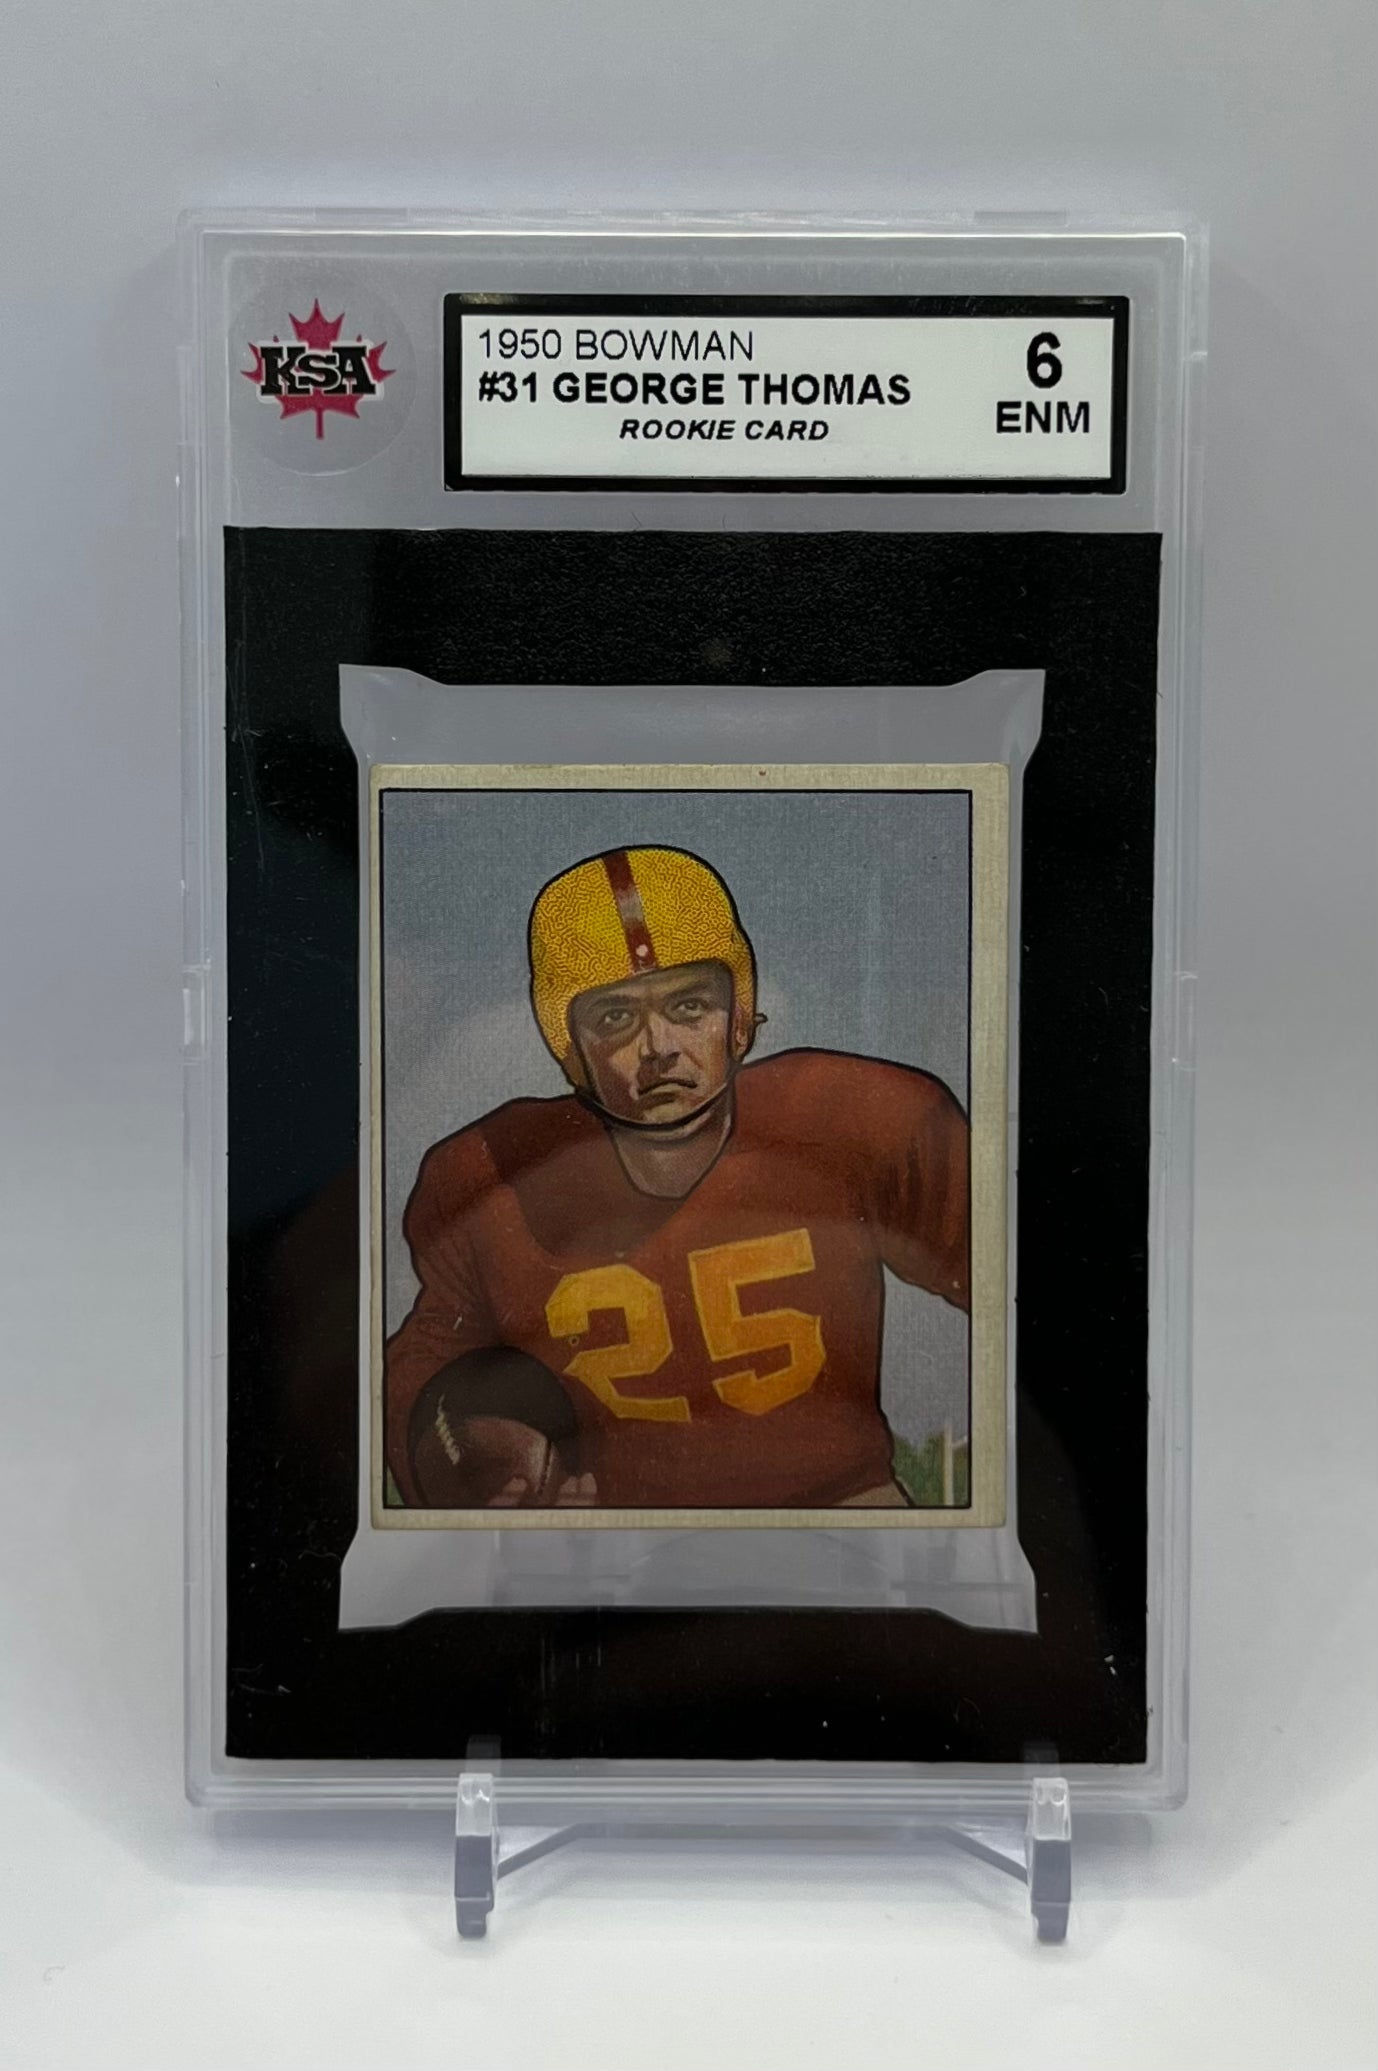 1950 #31 GEORGE THOMAS BOWMAN - KSA 6 ENM